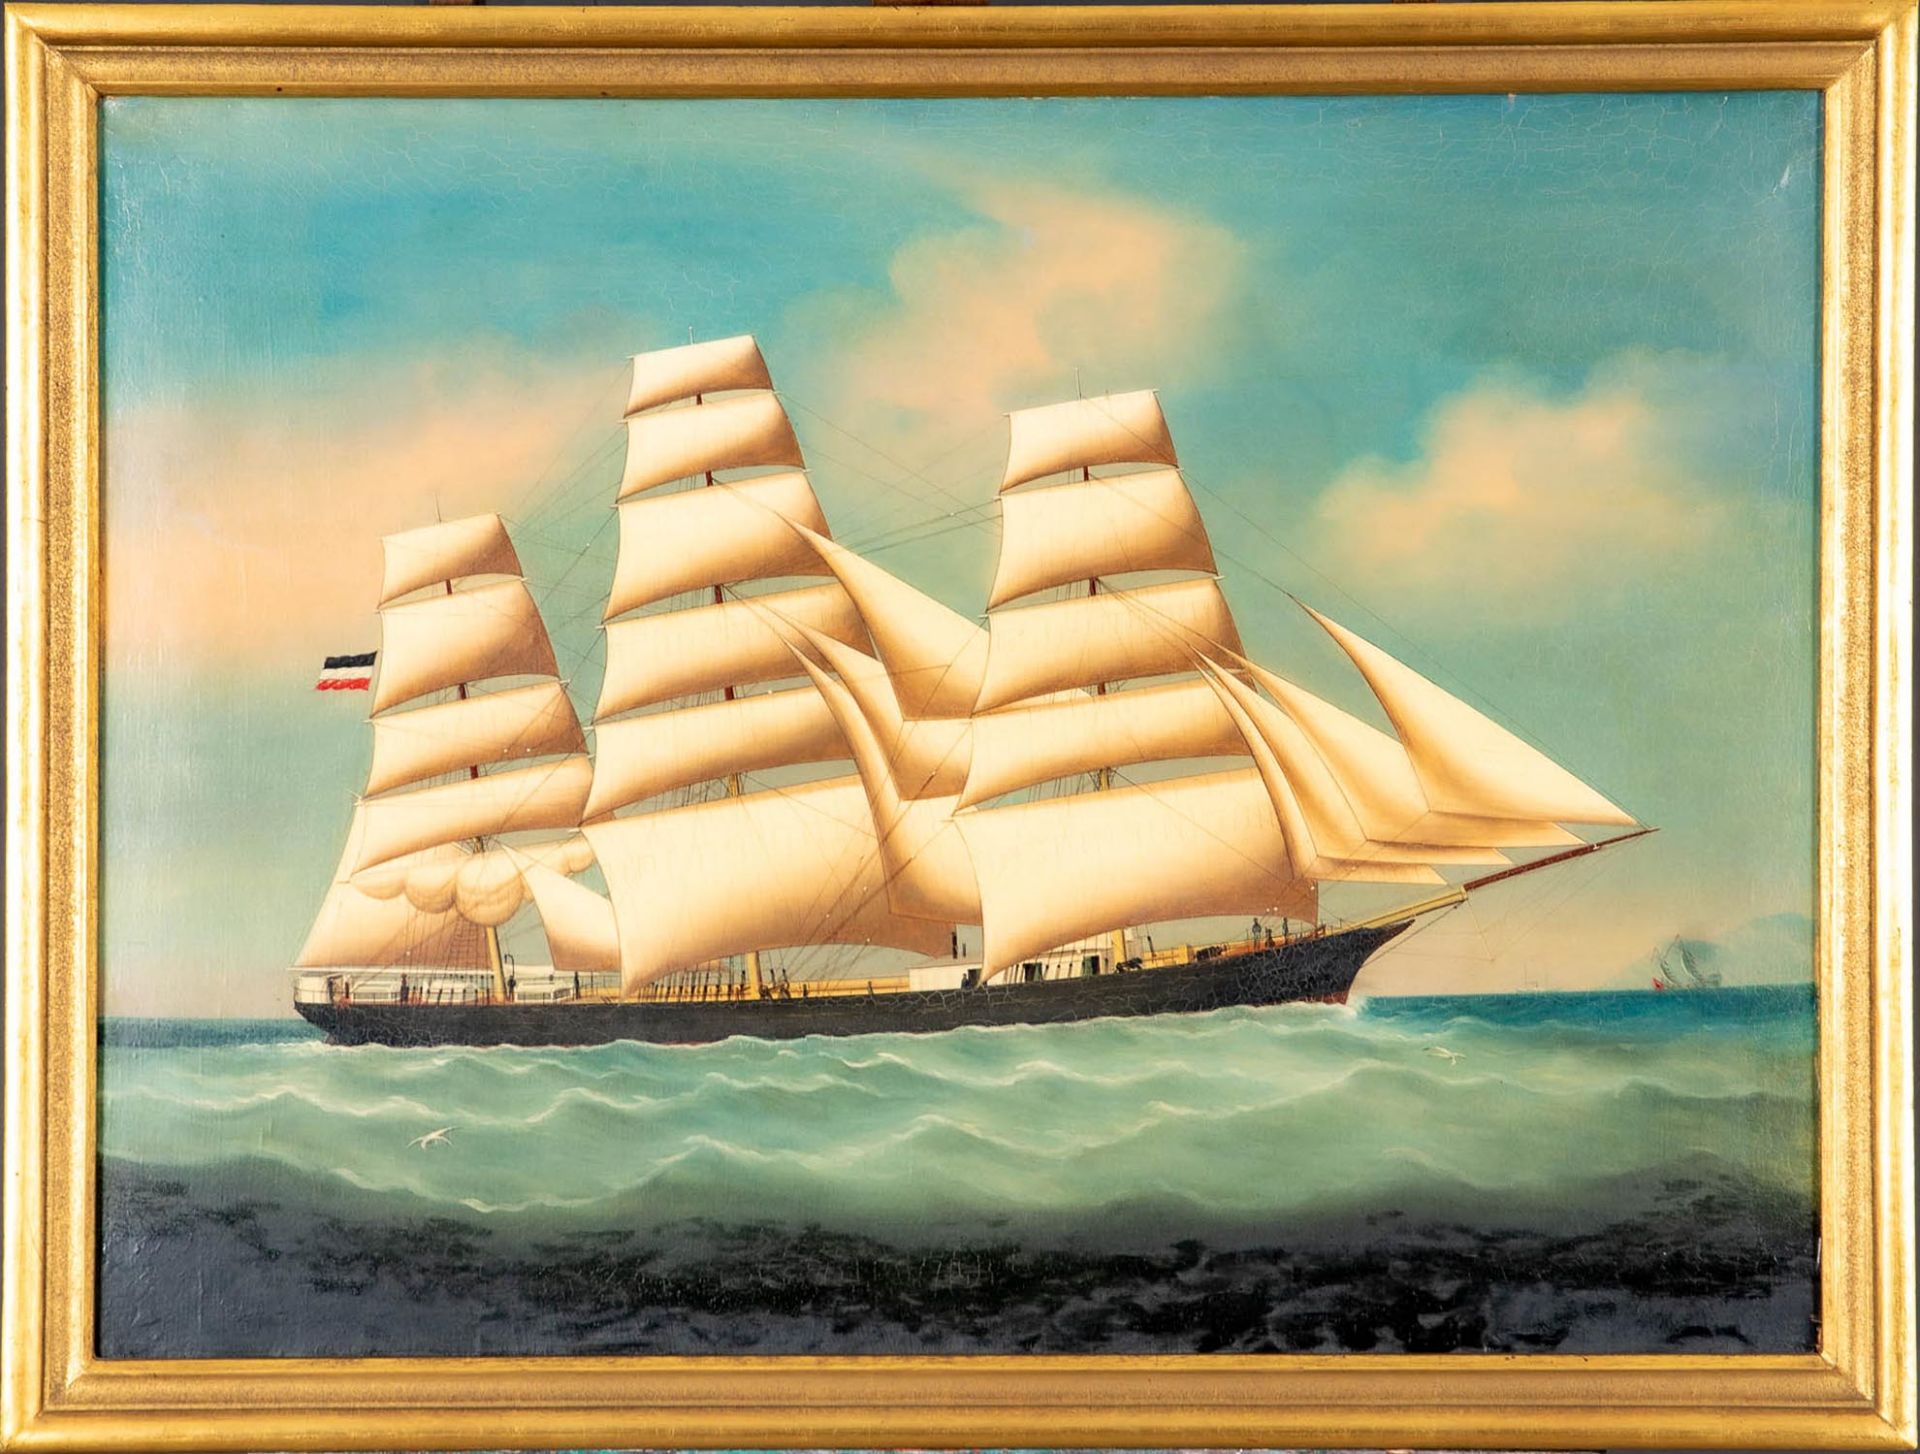 Kapitänsbild des Vollschiffes "Industrie" (1872 in Holland gebaut), qualitativ hochwertiges Gemälde